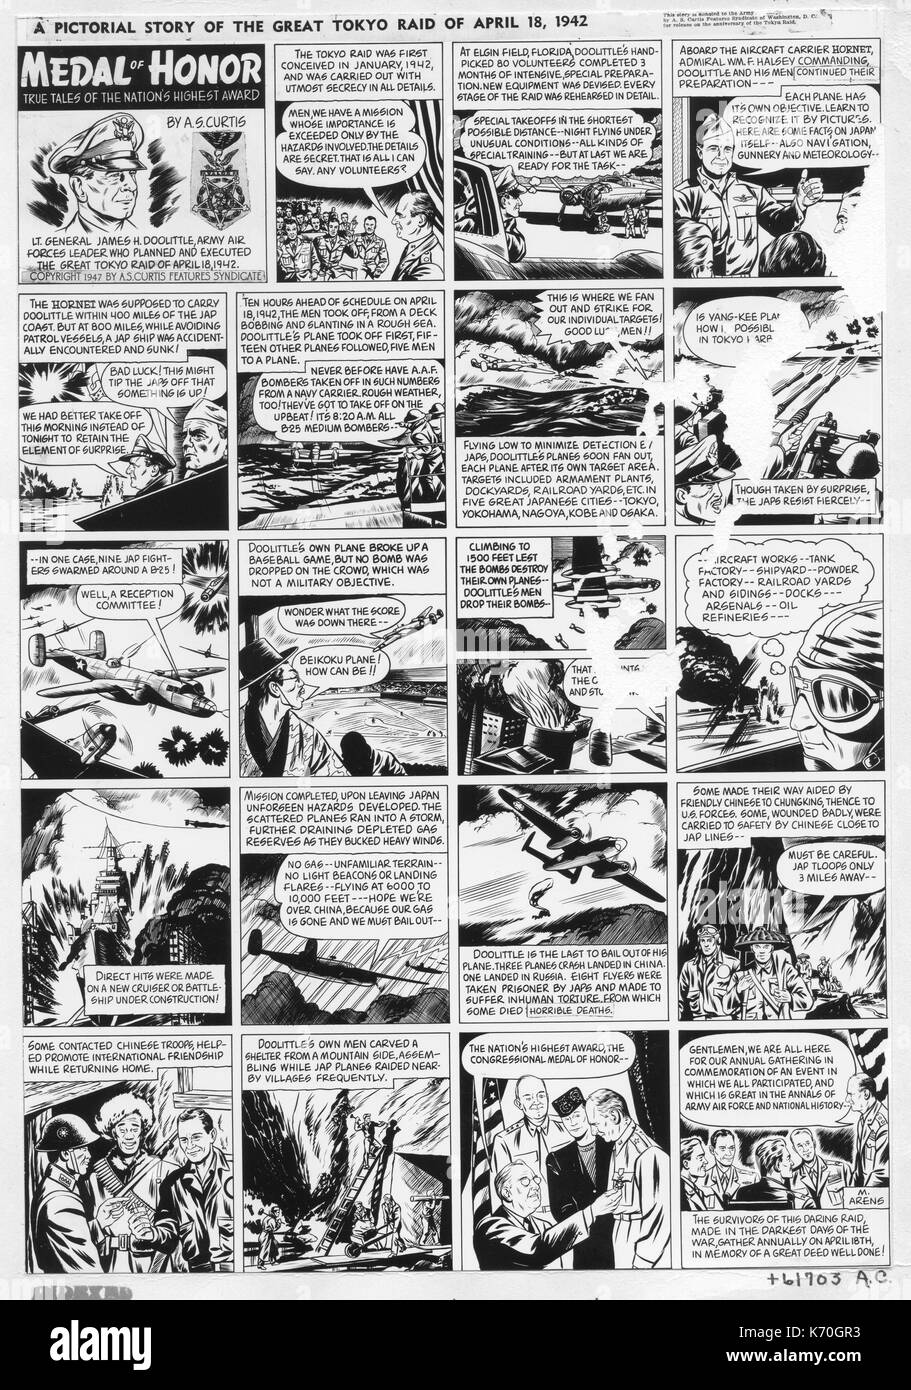 Esta caricatura historia del gran Raid de Tokio del 18 de abril de 1942, fue donada por A.S. Curtis Features Syndicate de la USAF en el aniversario del Raid Doolittle. La II Guerra Mundial Foto de stock